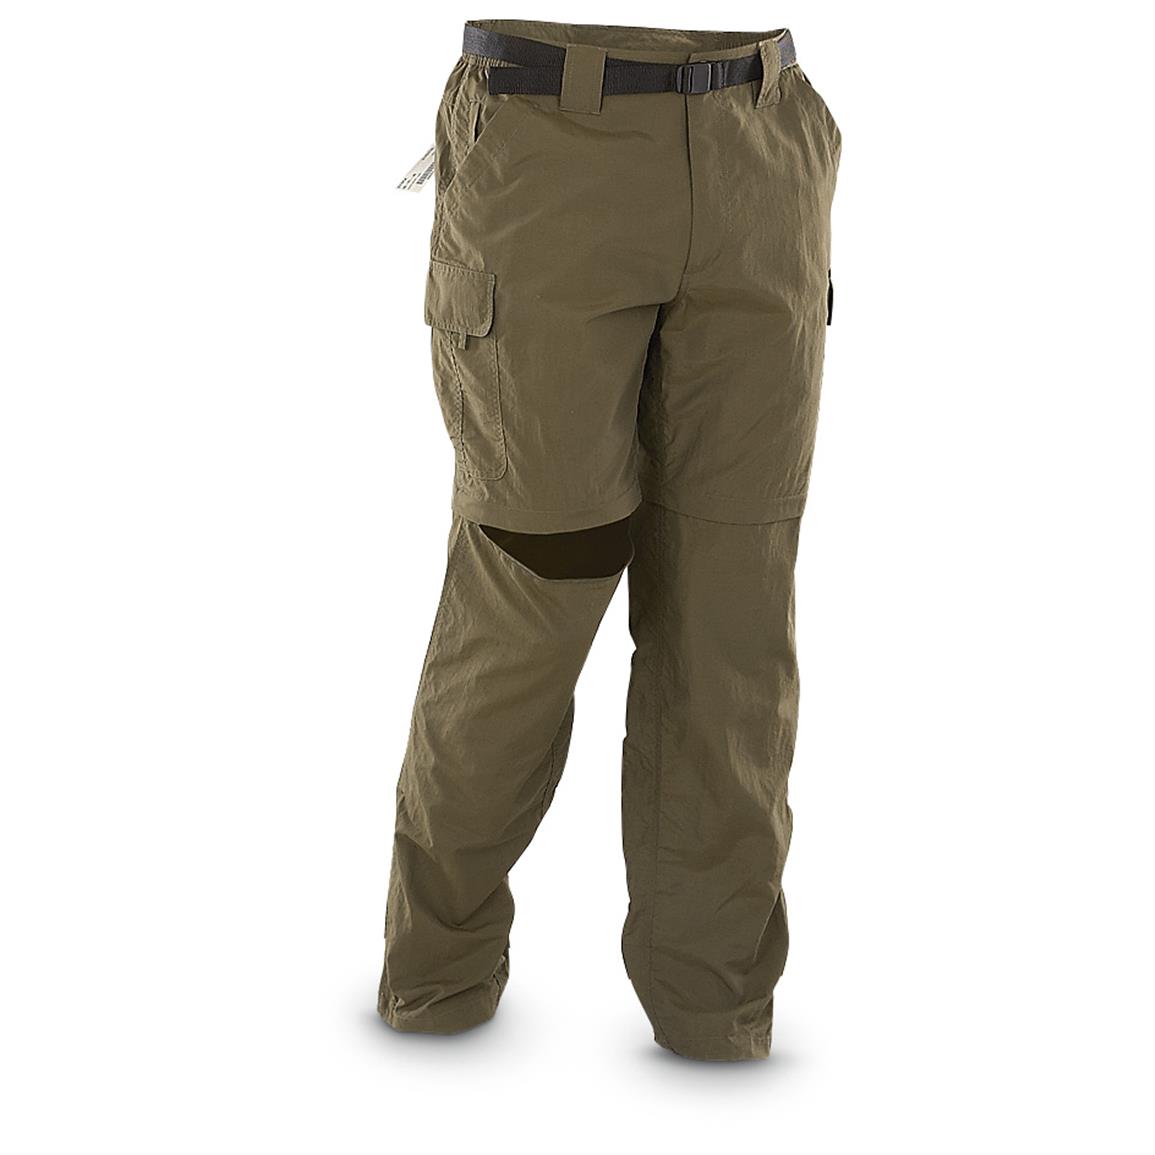 Marino Bay Nylon Baja Zip-off Pants - 627545, Jeans & Pants at ...